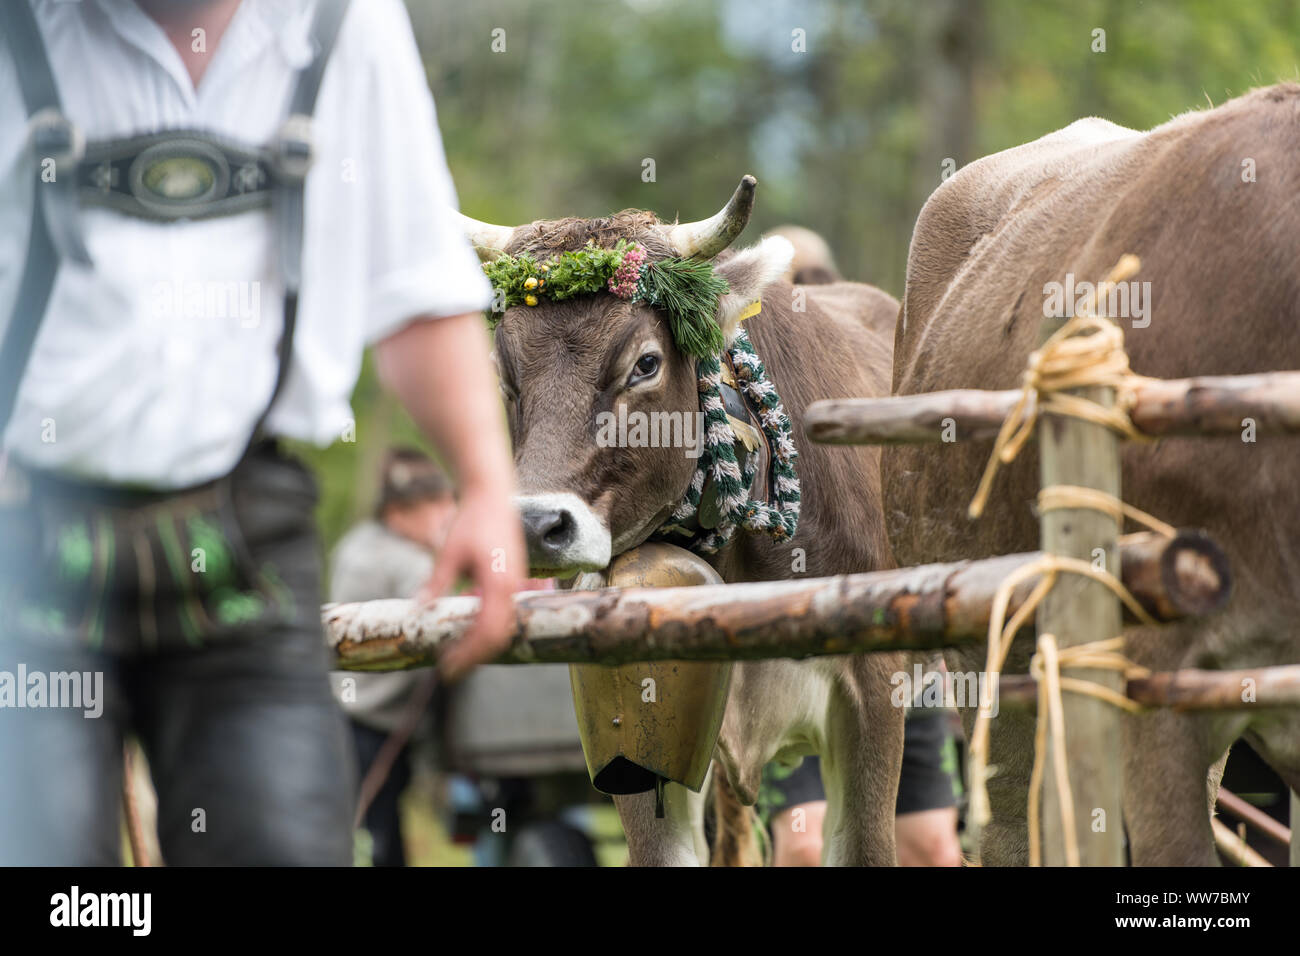 Viehscheid' nach dem Almabtrieb (zeremonielle Fahren hinunter von Rindern von der Alm ins Tal im Herbst) im Spätsommer in Bayern, Kuh mit Kopftuch und Kuhglocke, neben dem Landwirt in Lederhose Stockfoto